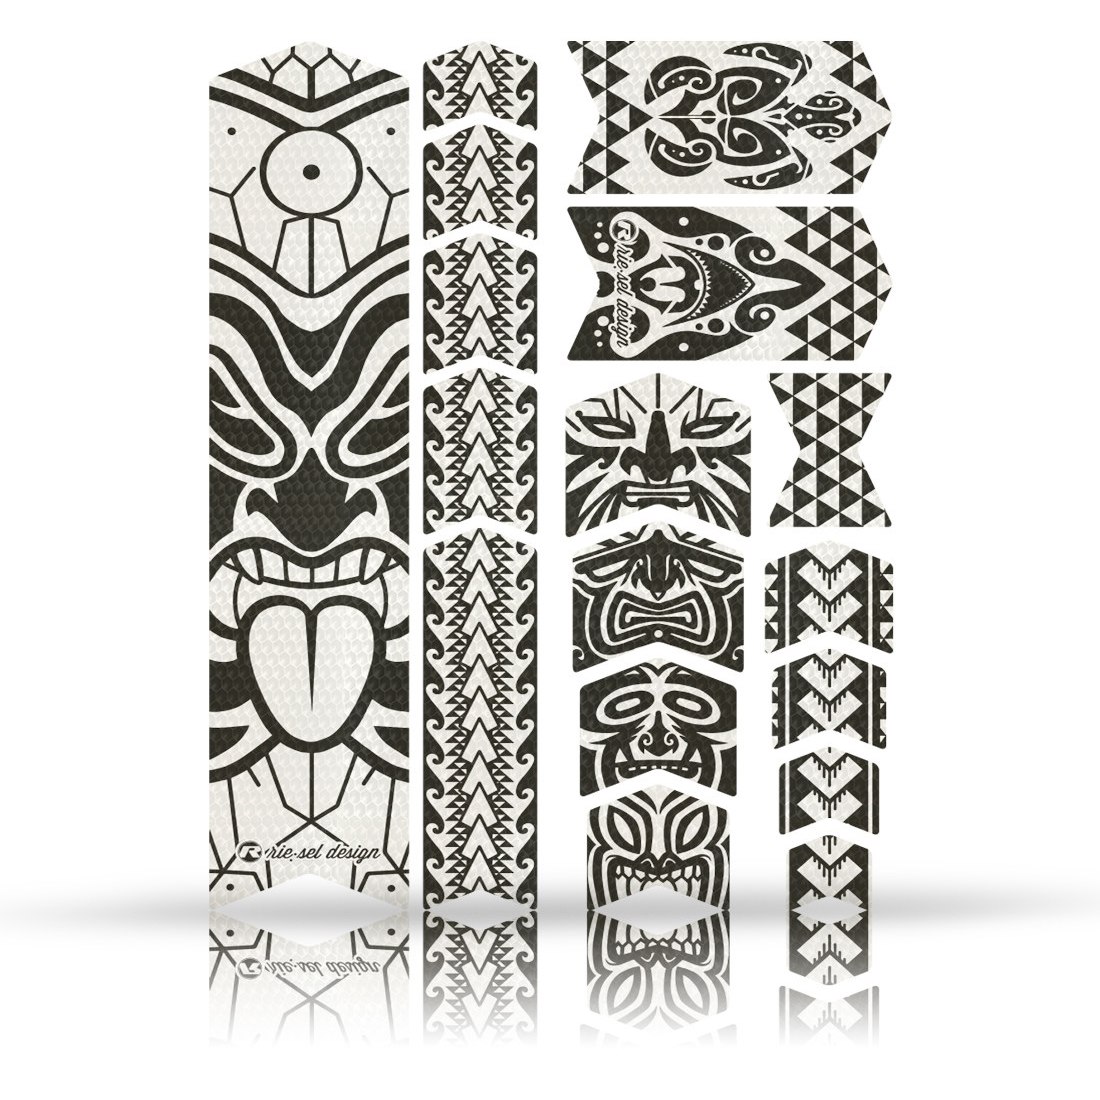 Produktbild von rie:sel design frame:Tape 3000 Rahmenschutz - maori